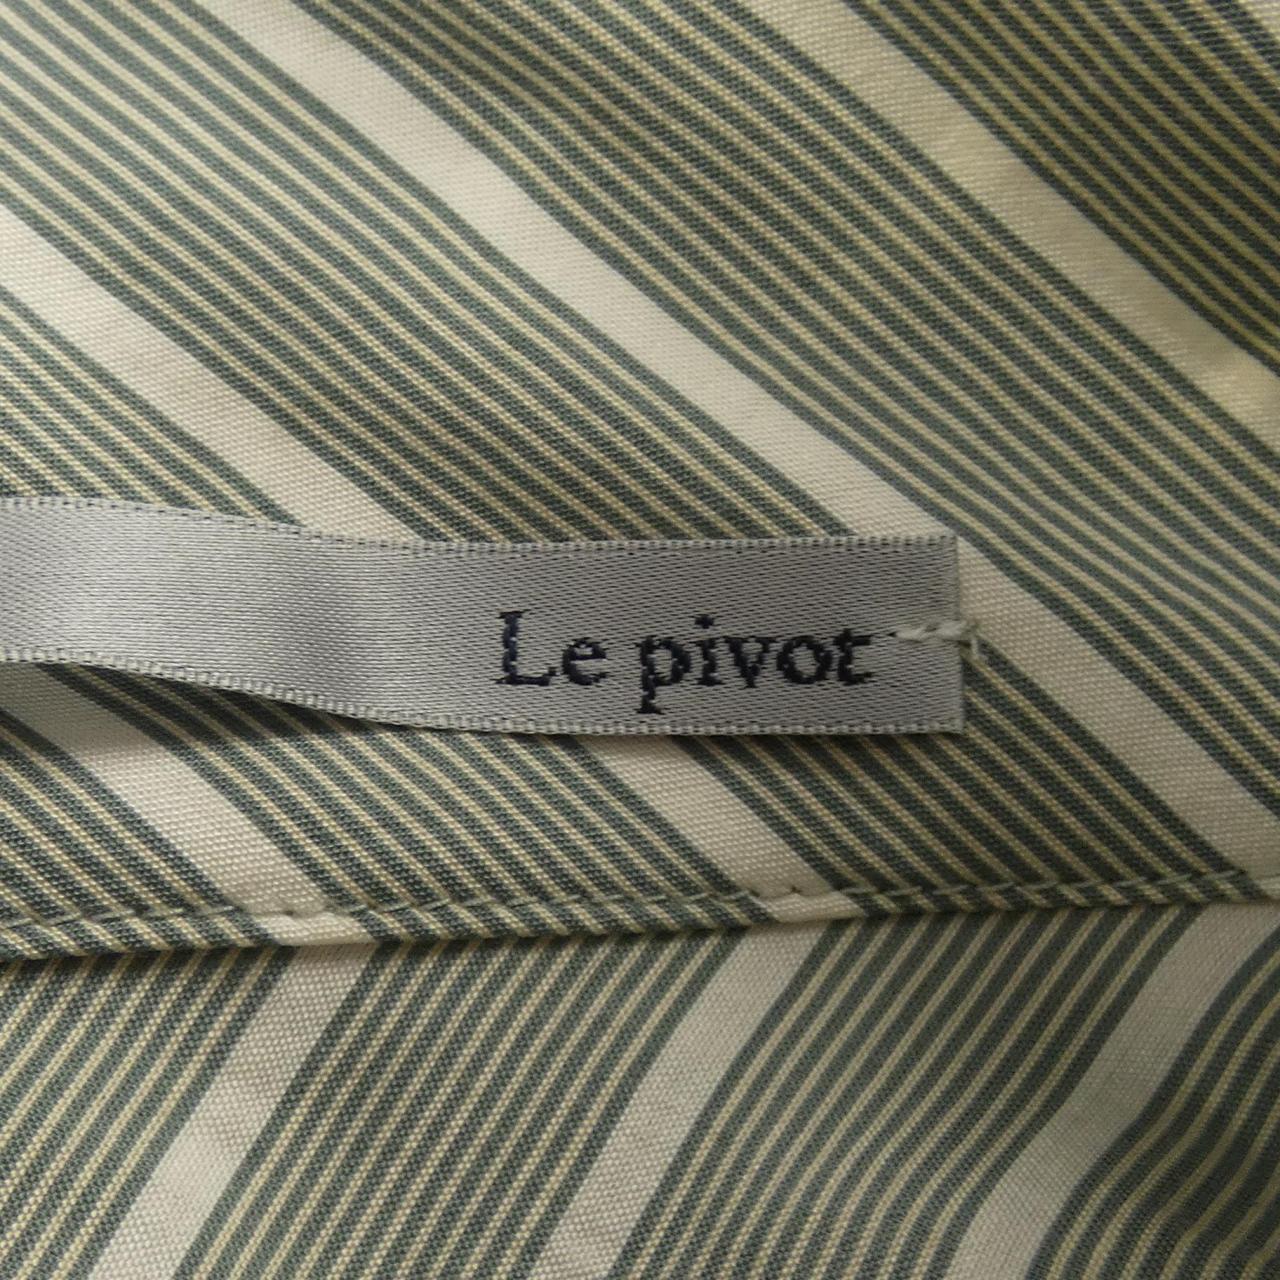 LEPIVOT shirt